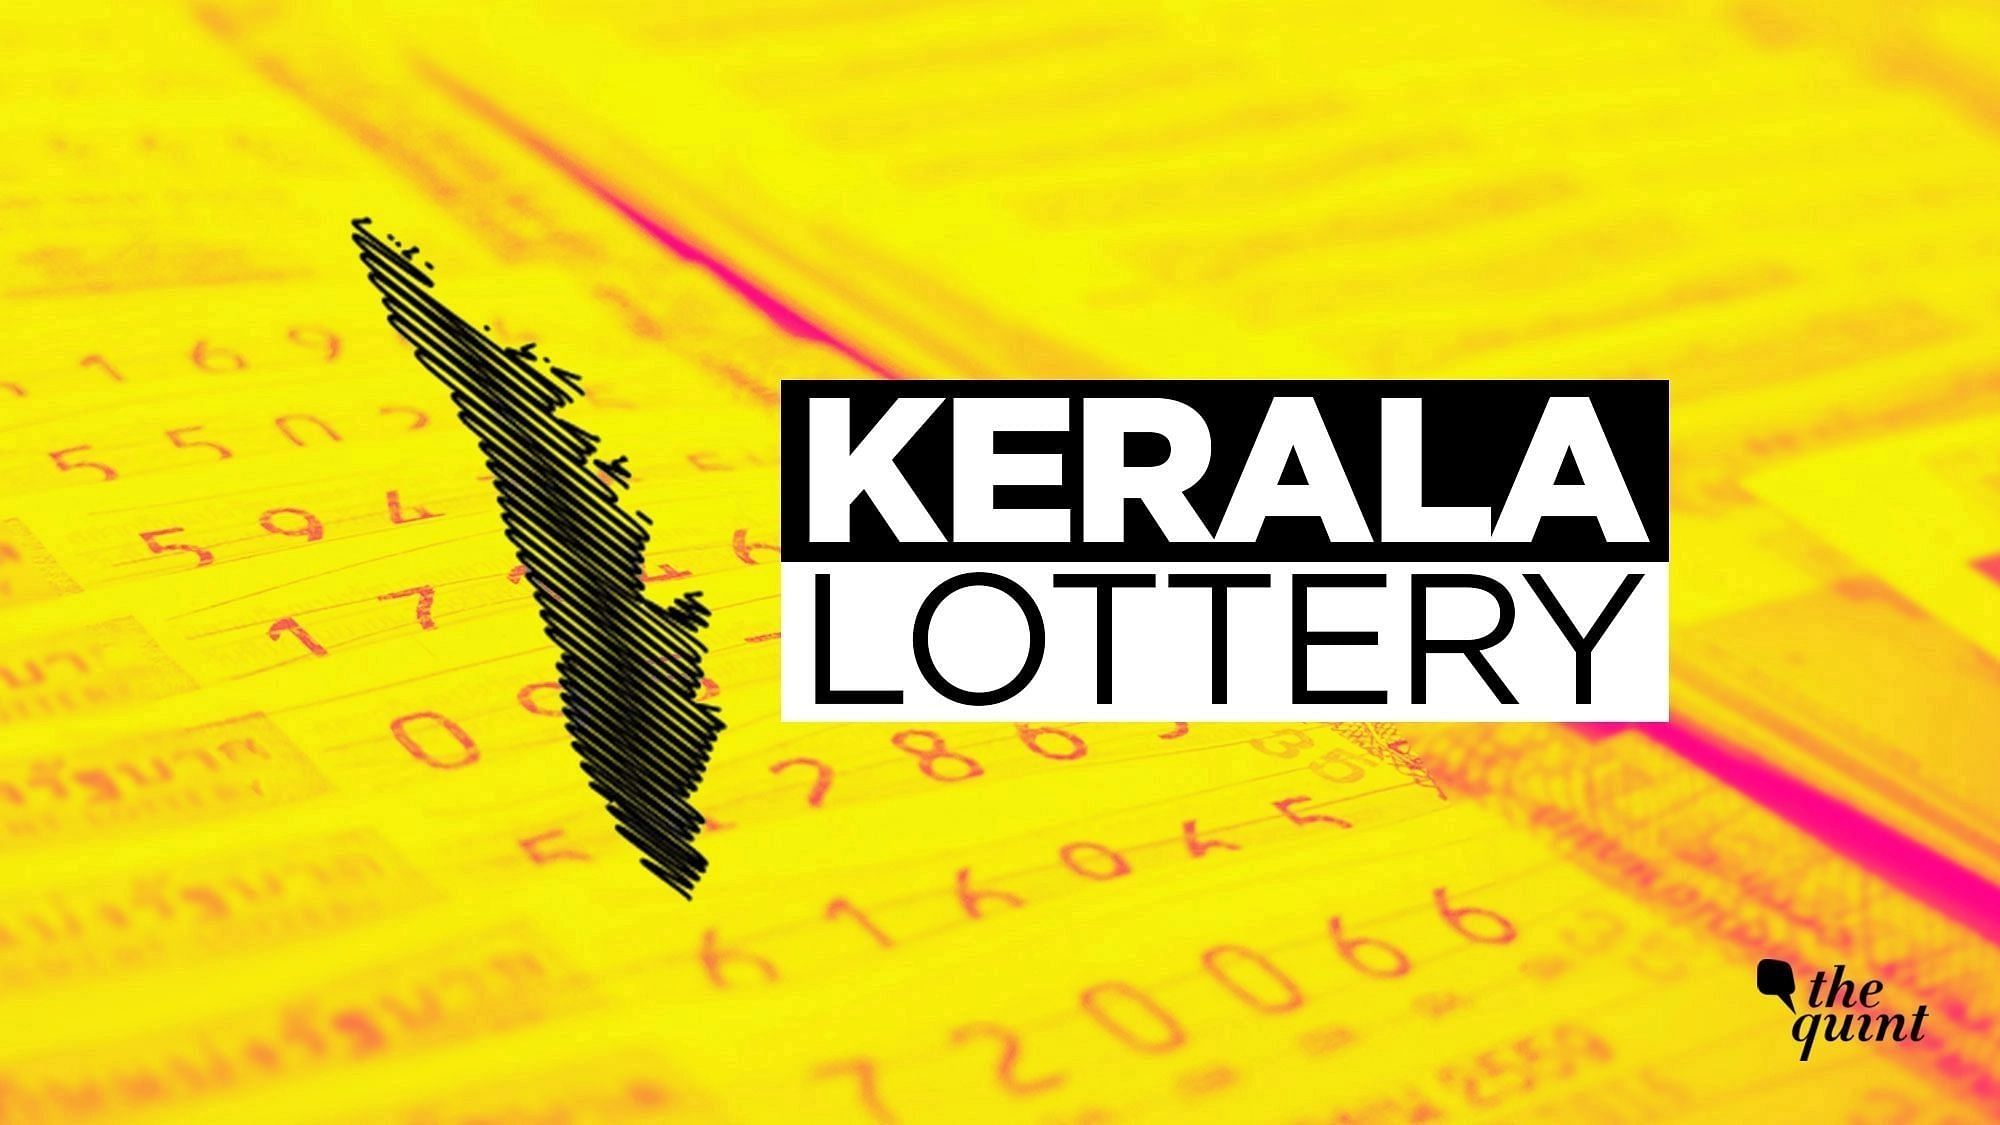 <div class="paragraphs"><p>Kerala Lottery Akshaya AK 554 first prize is Rs 70 lakh.</p></div>